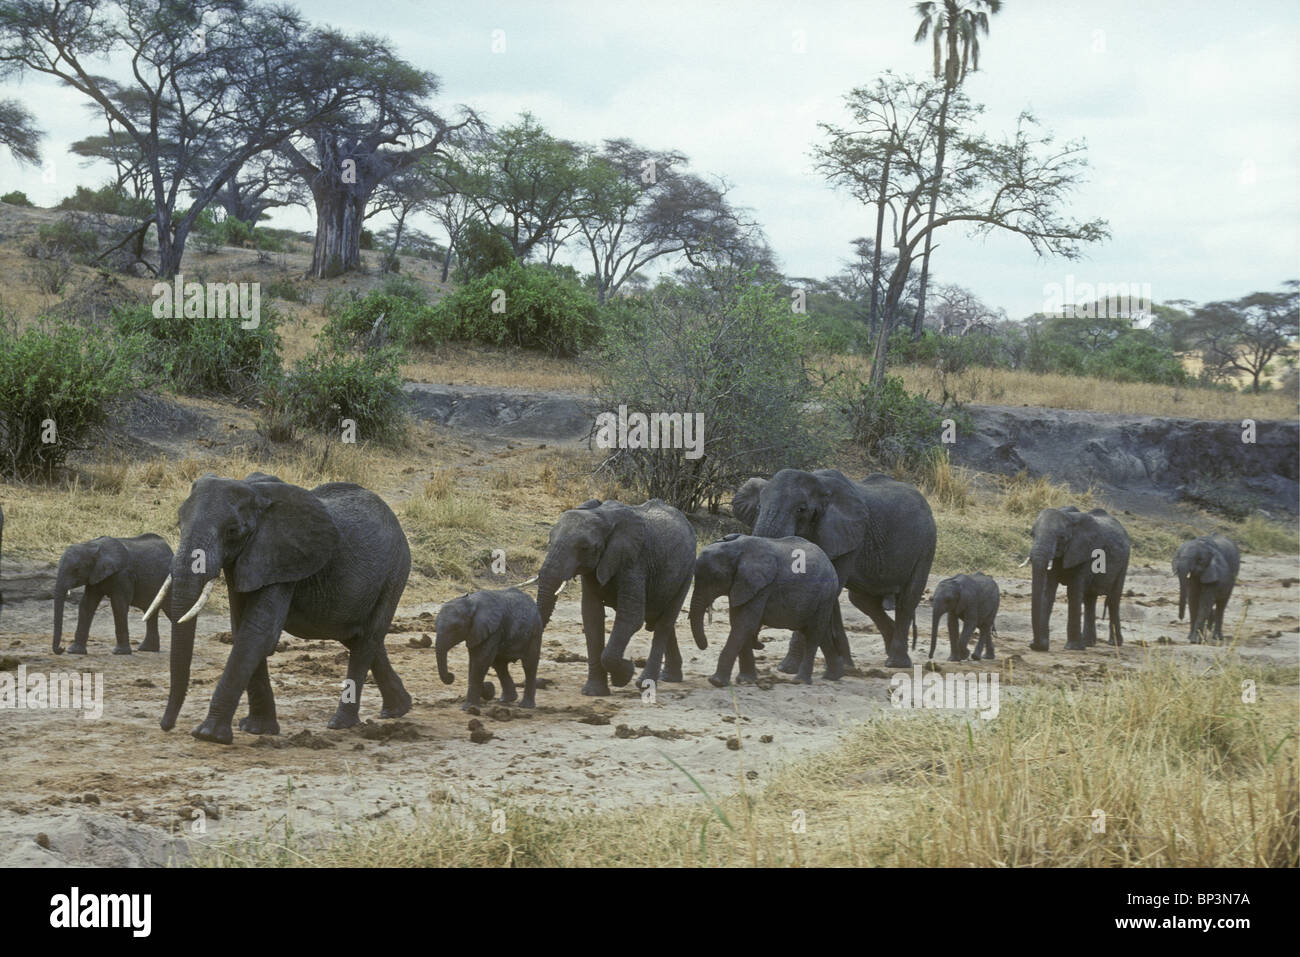 Troupeau d'éléphants famille groupe de femelles et veaux descendre lit de rivière à sec, à la recherche d'eau Parc national de Tarangire Tanzanie Banque D'Images